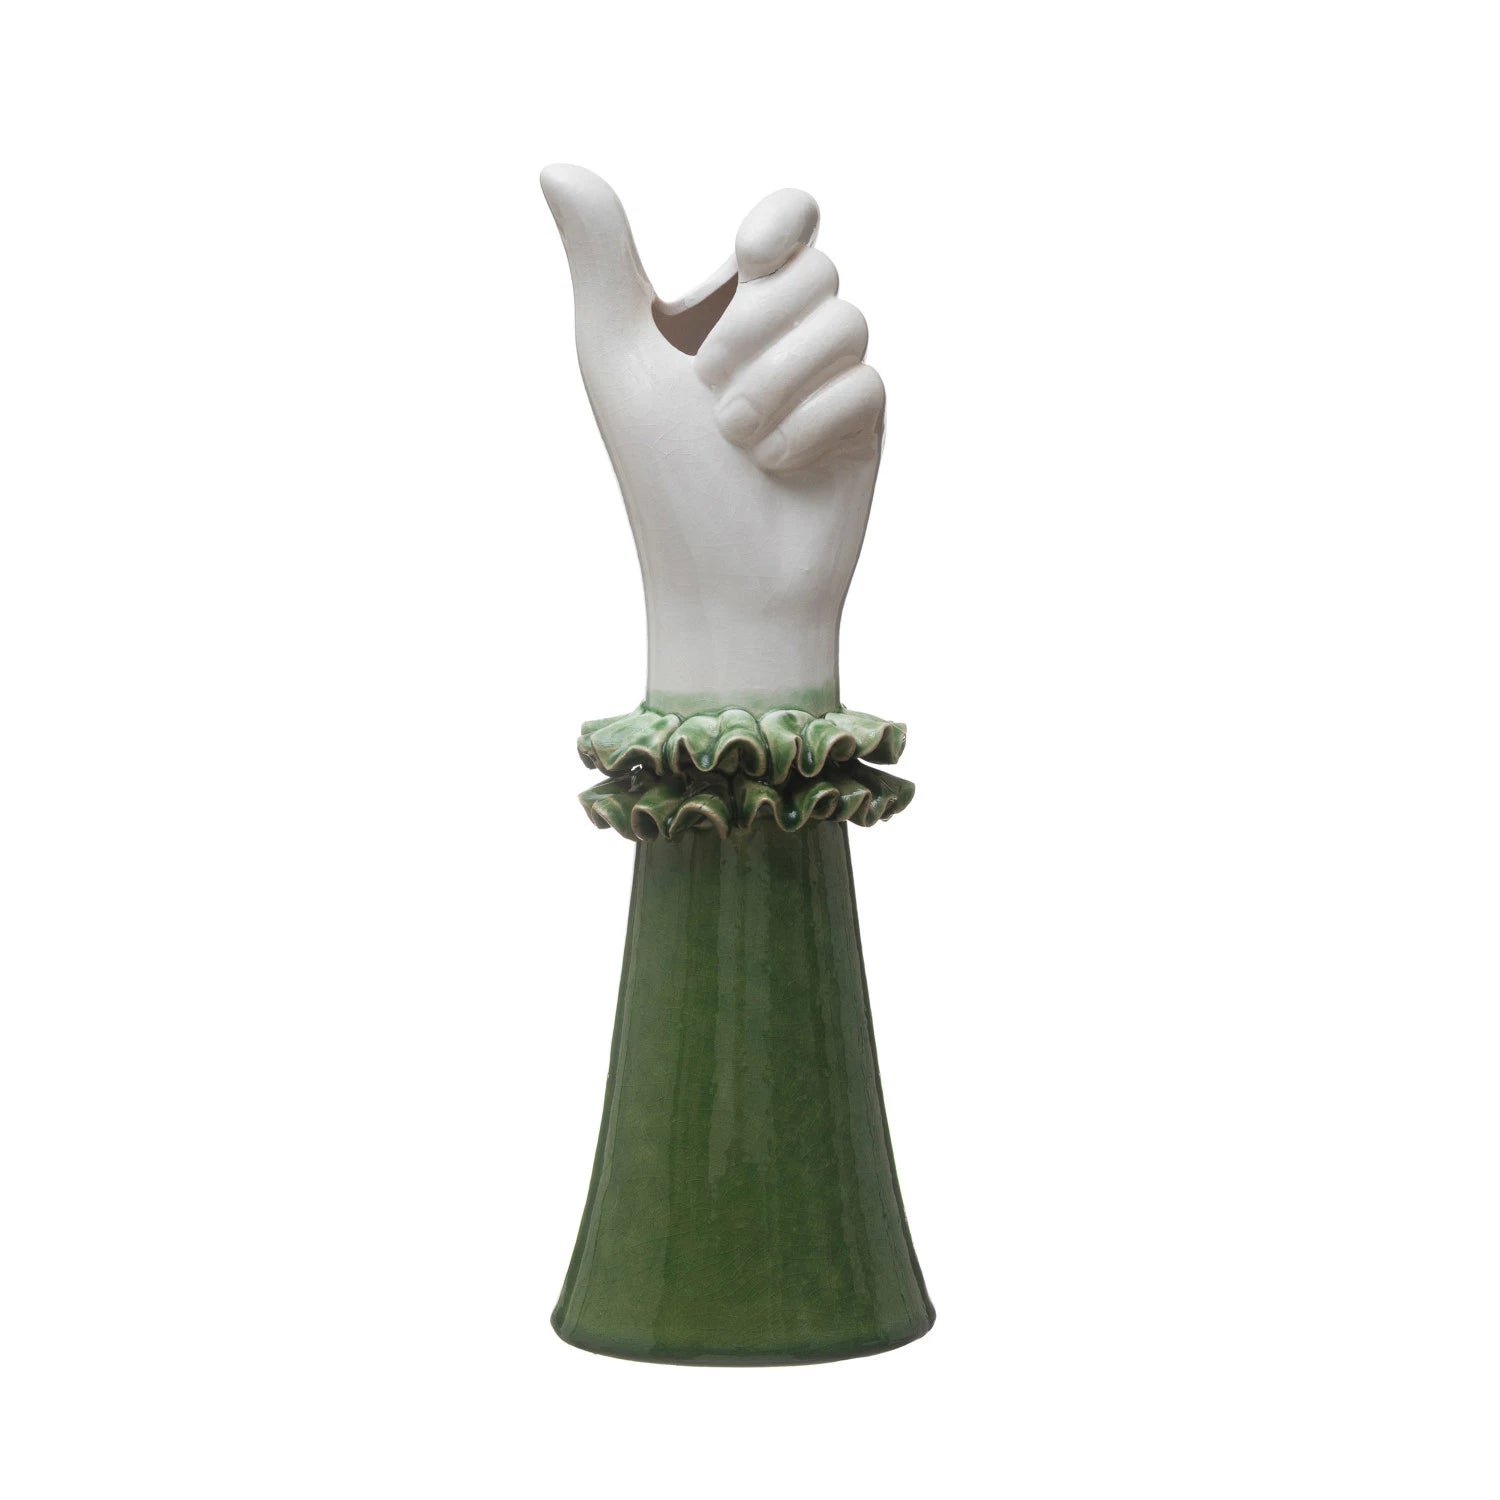 Stoneware Hand Shaped Vase with Ruffled Shirt Sleeve